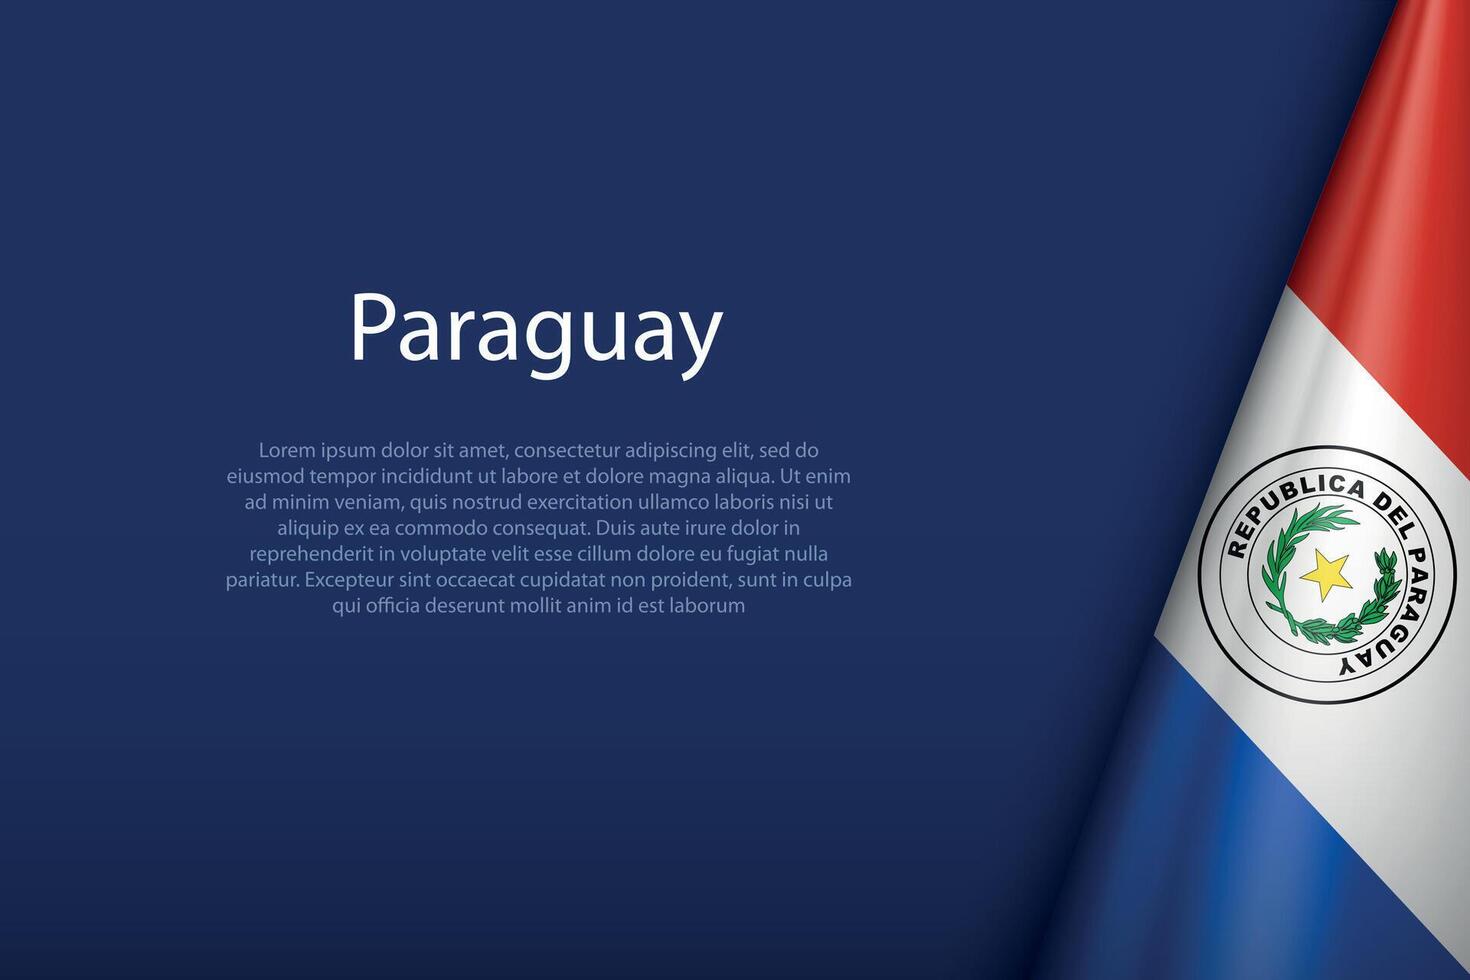 paraguay nationell flagga isolerat på bakgrund med copy vektor